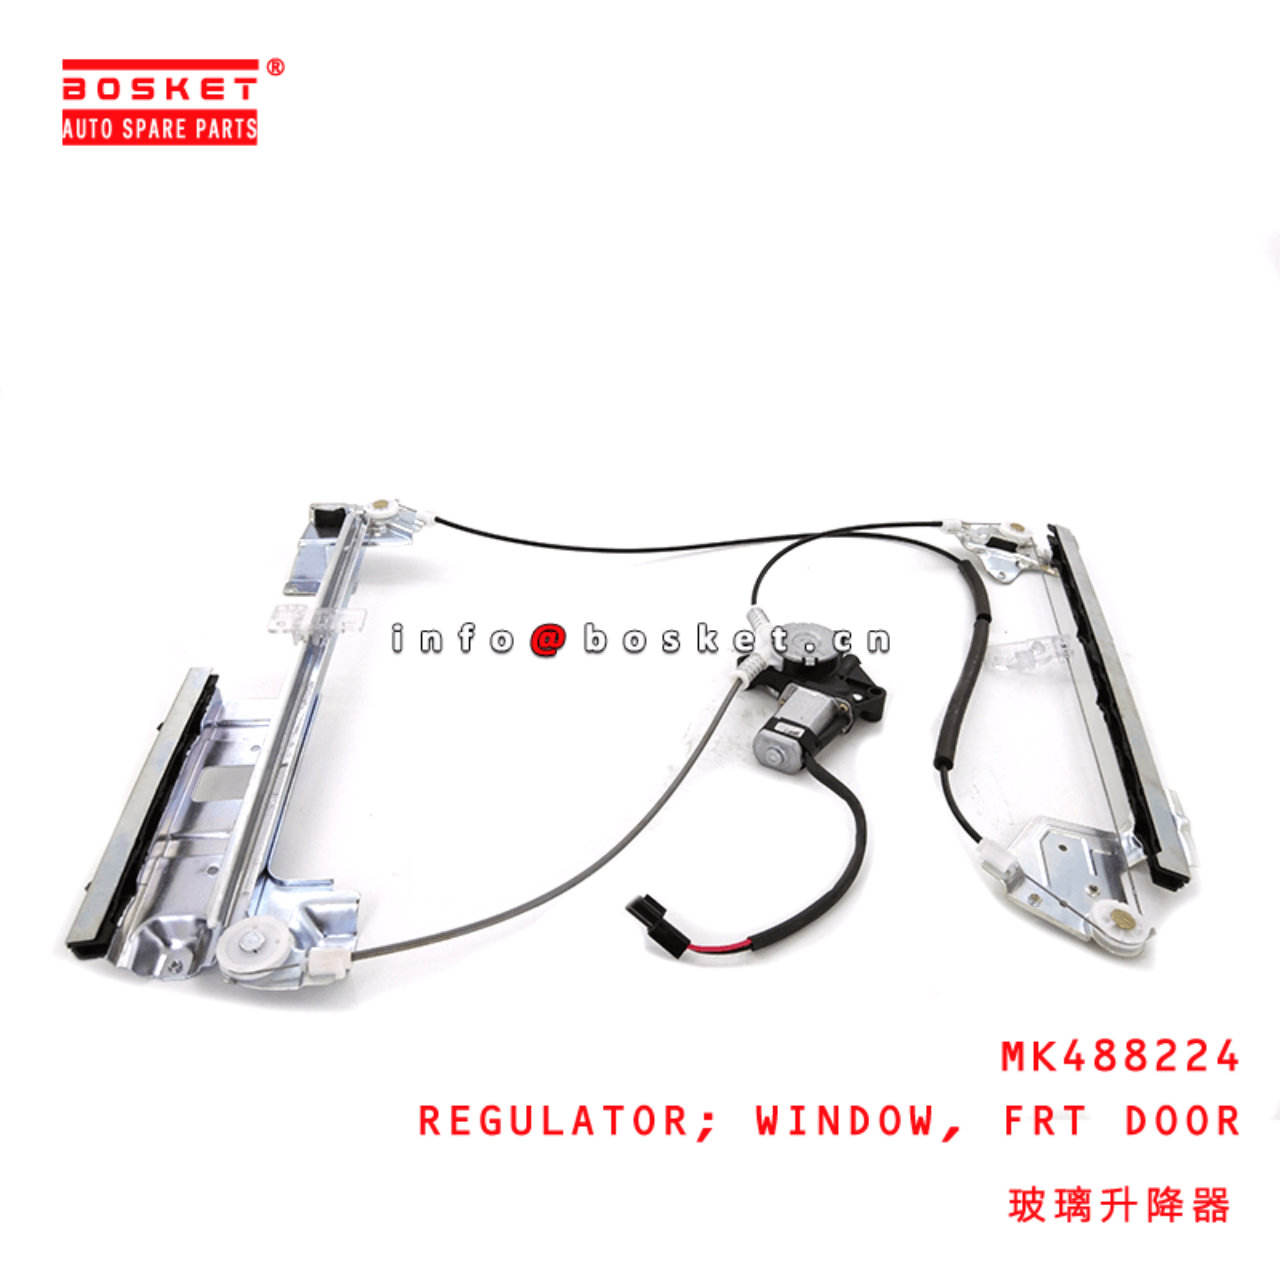  MK488224 Front Door Window Regulator Suitable For MITSUBISHI FUSO 